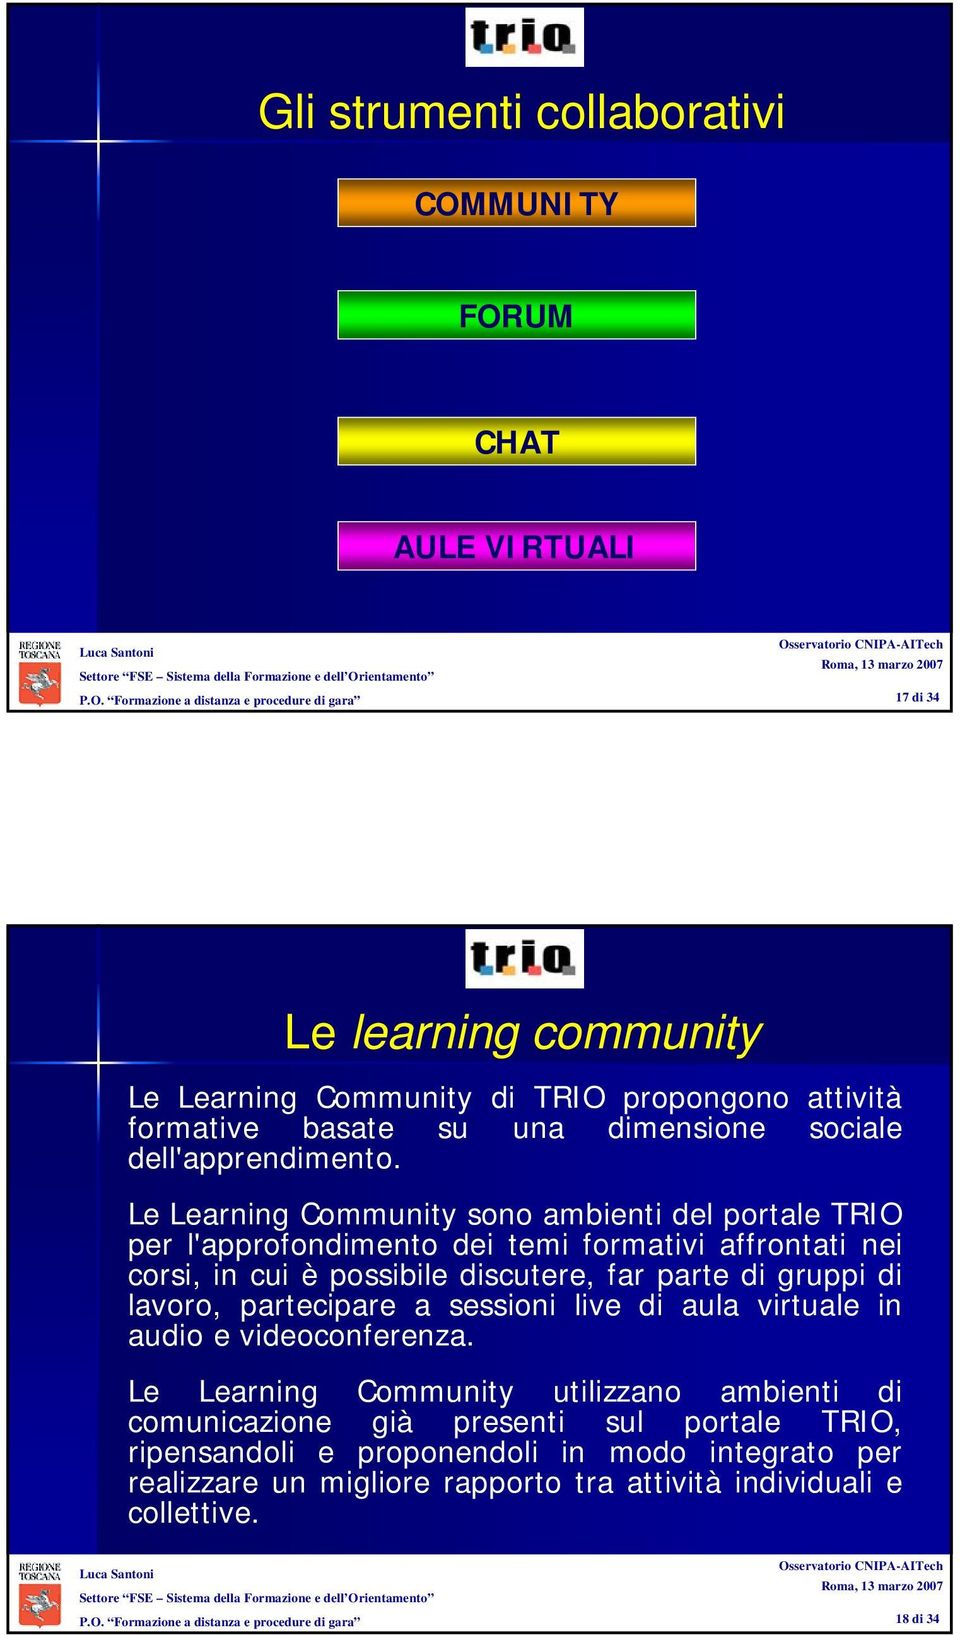 Le Learning Community sono ambienti del portale TRIO per l'approfondimento dei temi formativi affrontati nei corsi, in cui è possibile discutere, far parte di gruppi di